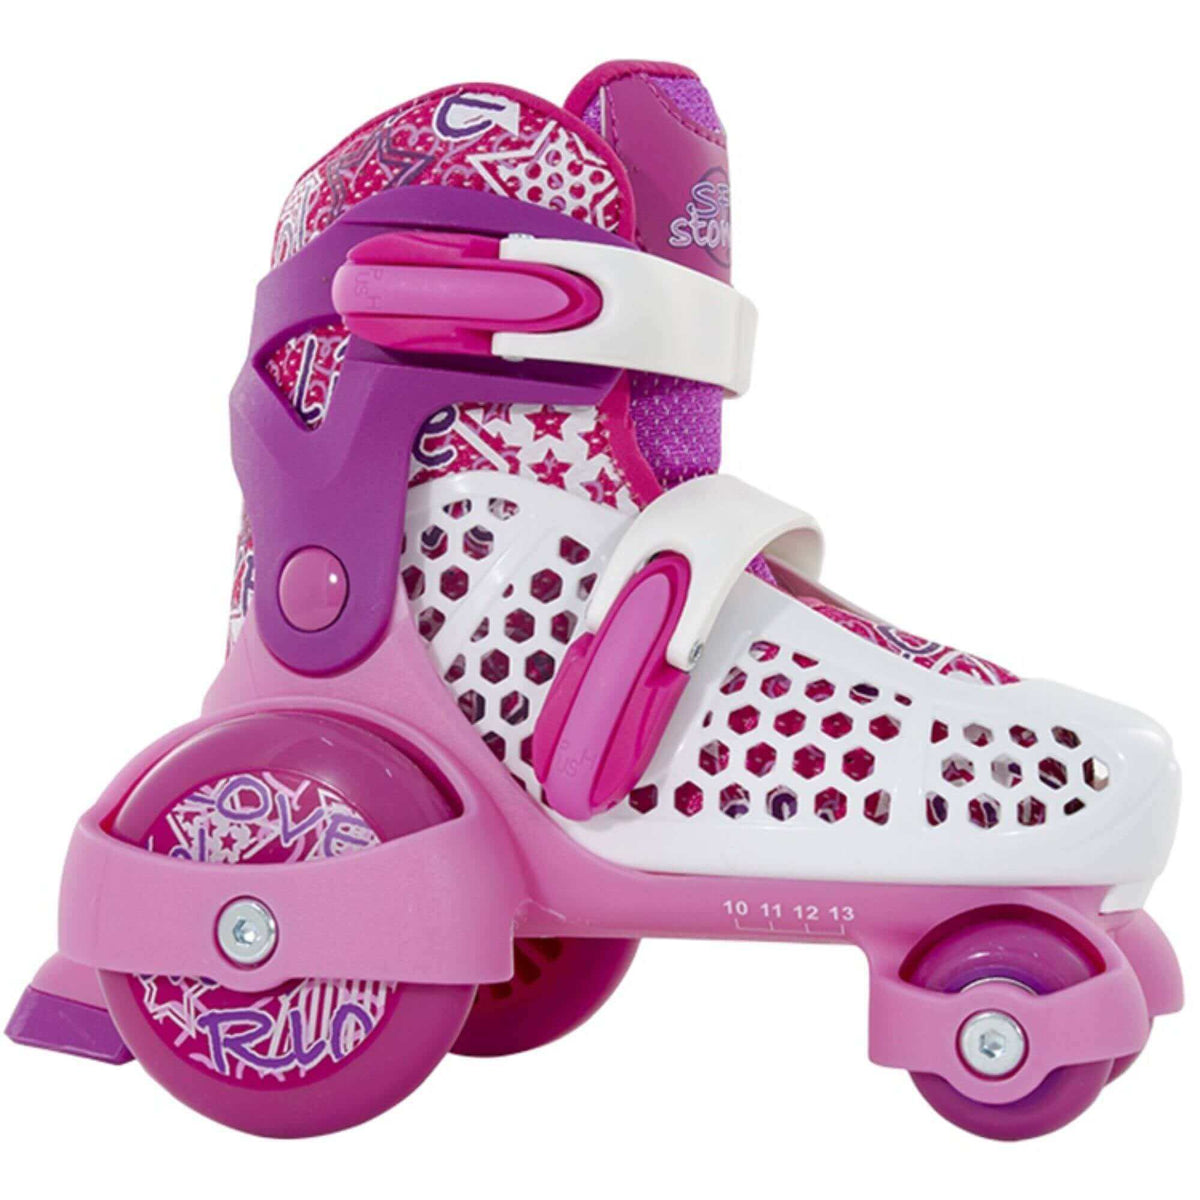 SFR Stomper Adjustable Childrens Skate - Pink